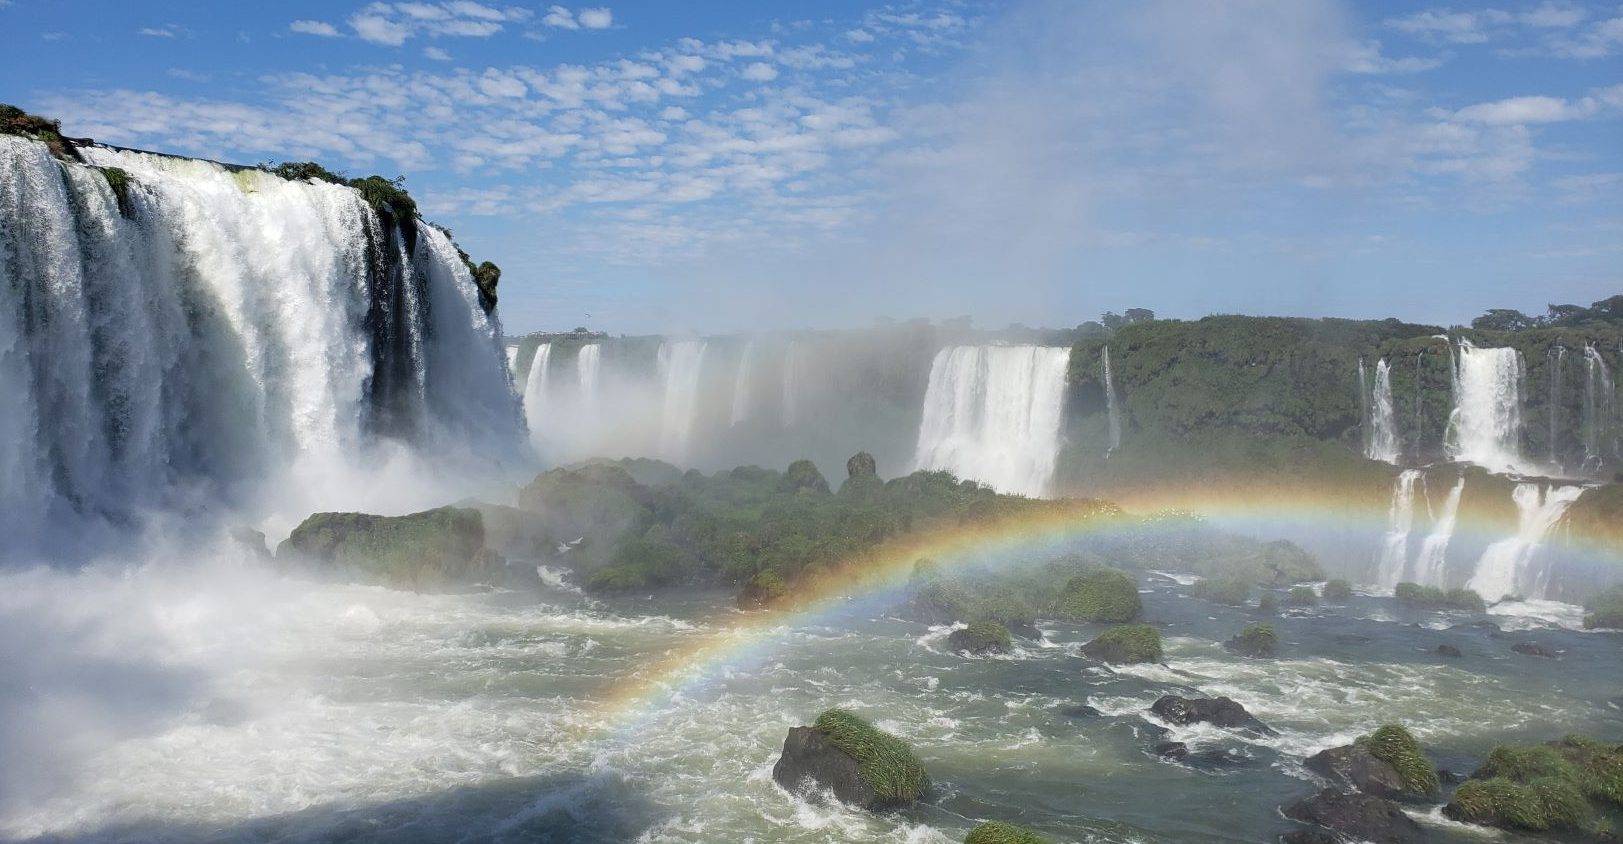 Foz do Iguaçu: melhores hotéis para viajar com bebês e crianças